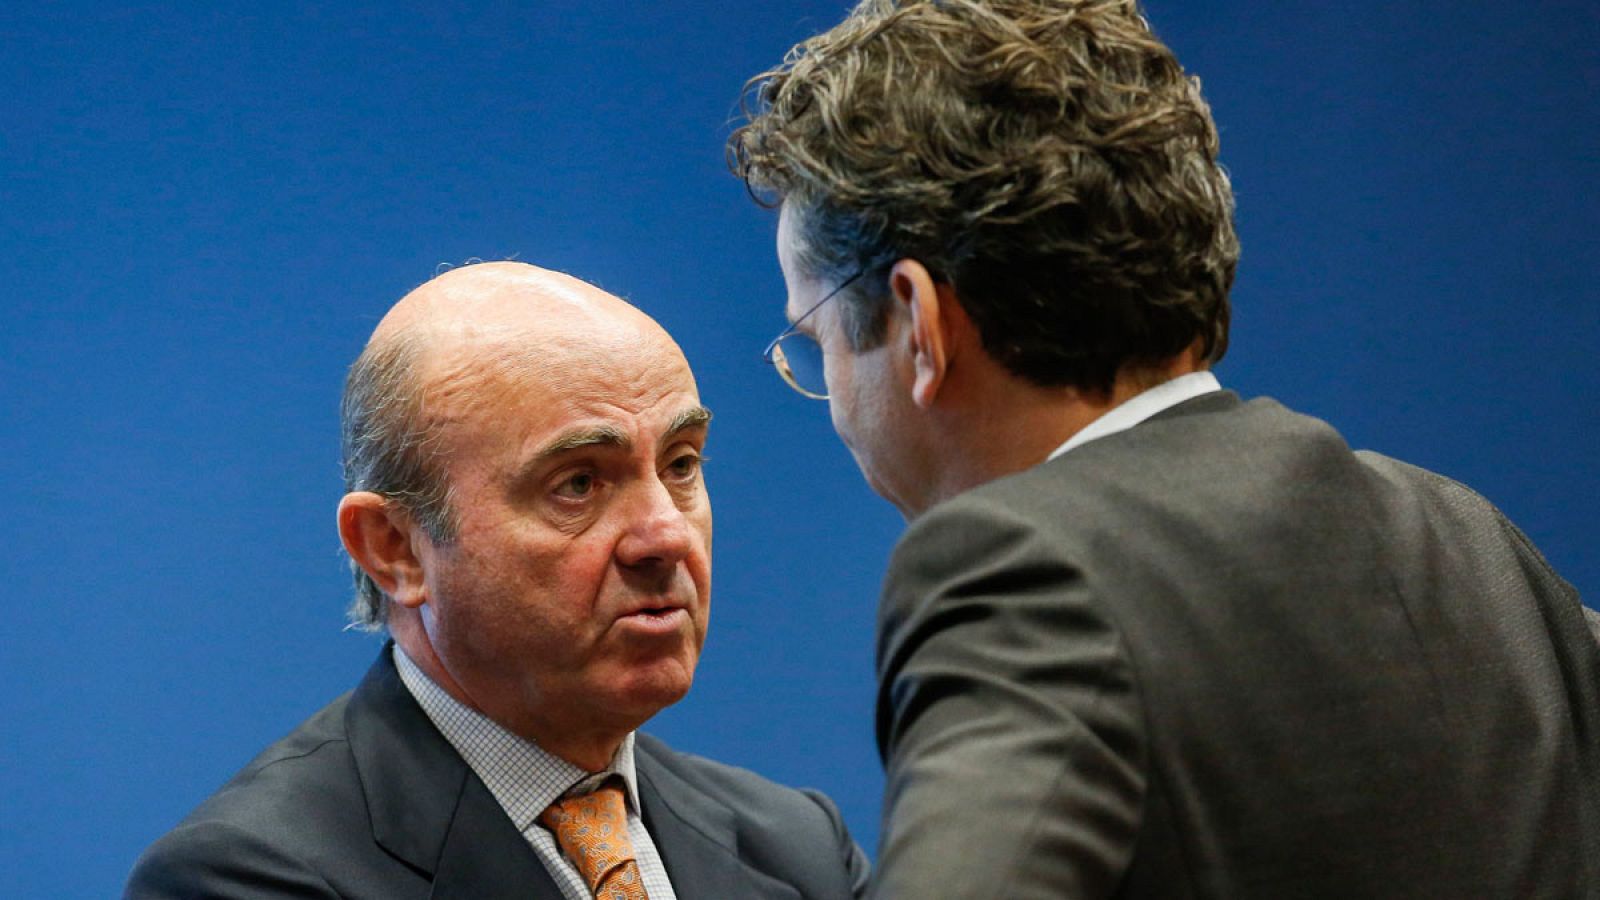 El ministro de Economía español, Luis de Guindos, habla con el presidente del Eurogrupo, Jeroen Dijsselbloem